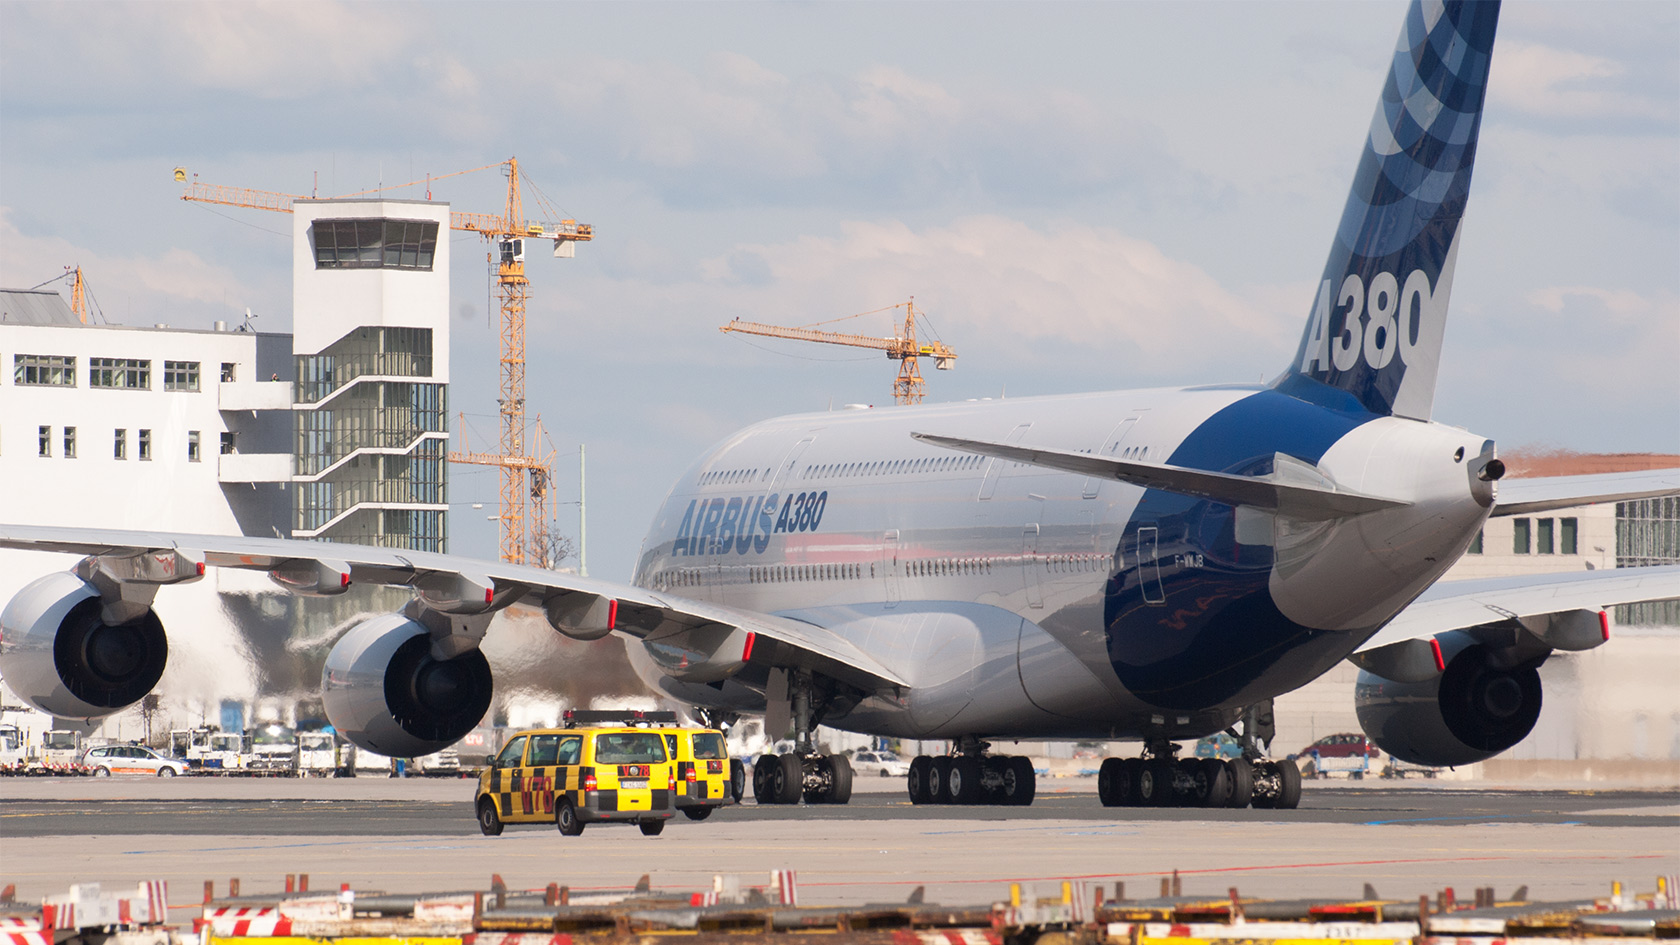 F-WWJB, Airbus A380